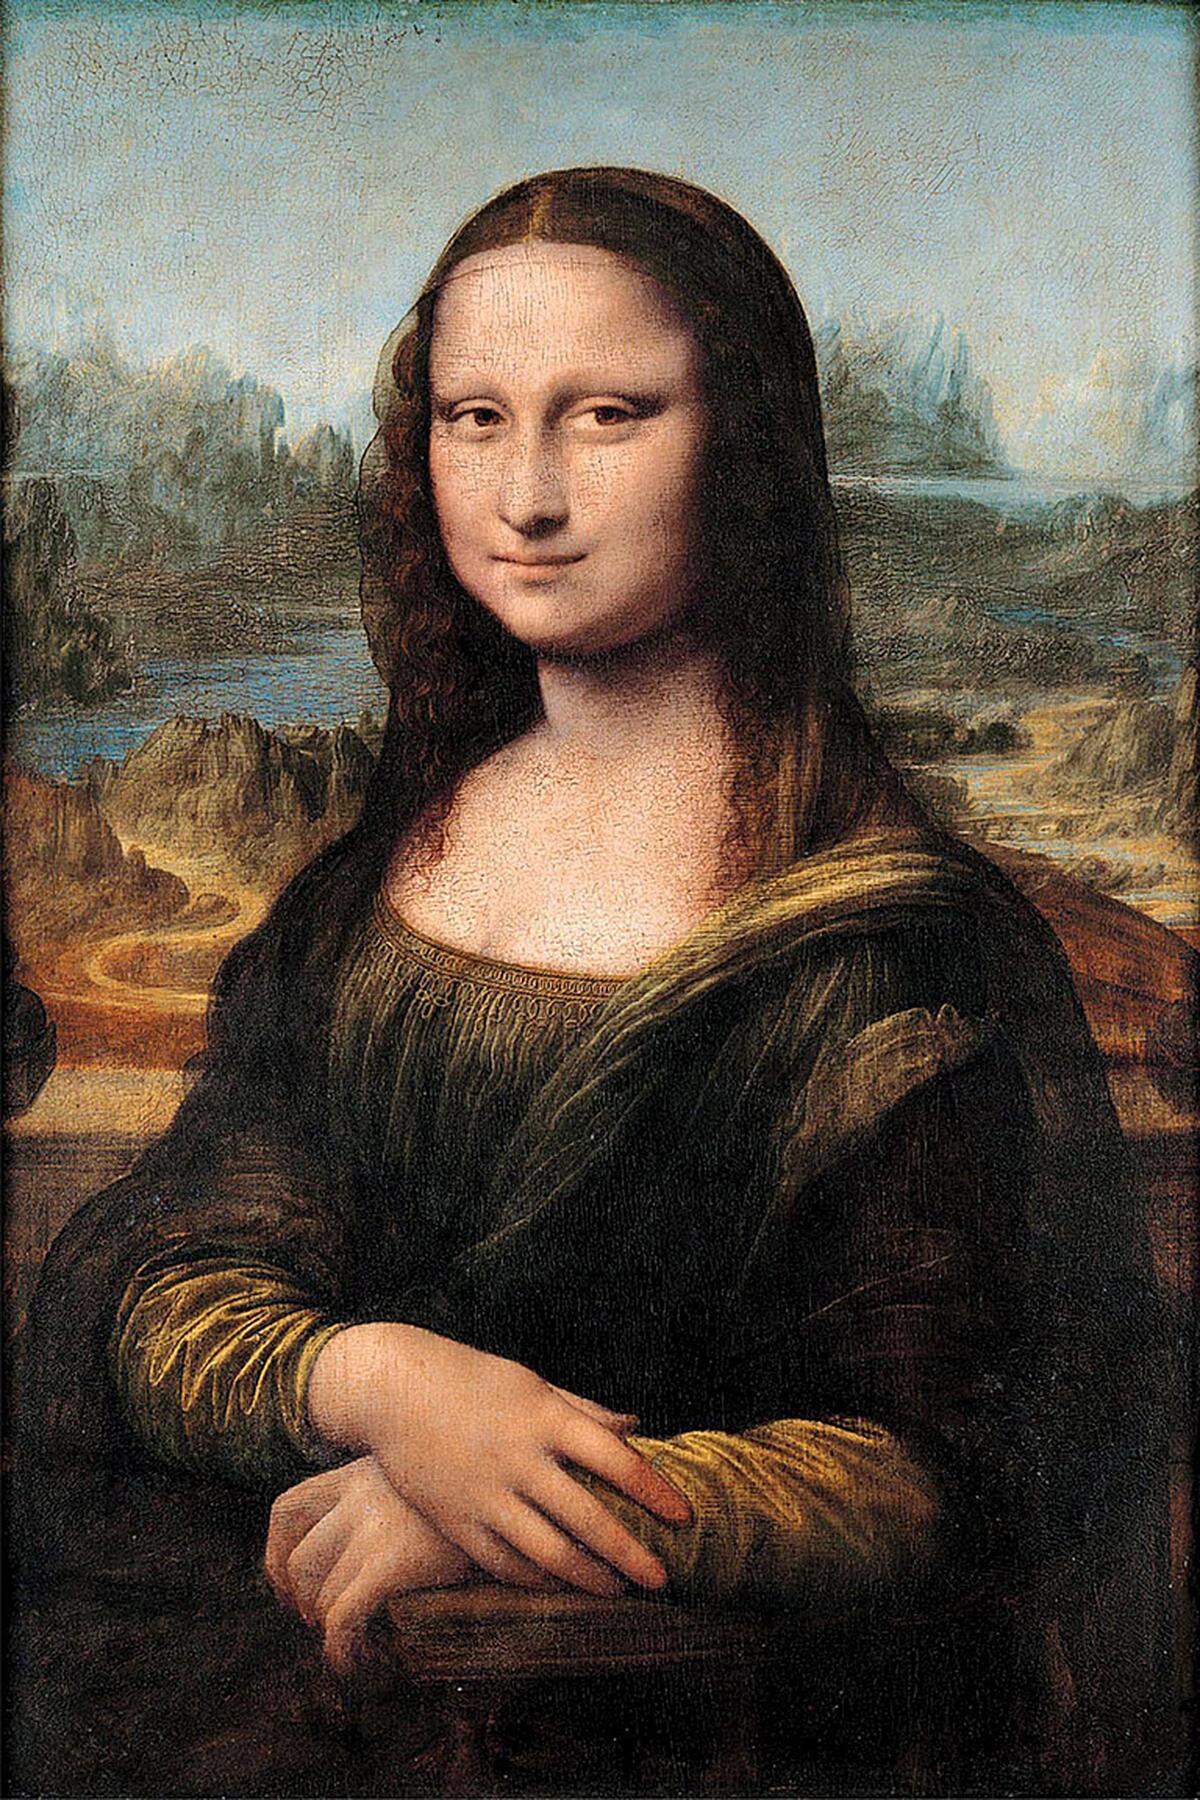 Zurück zur Original-"Mona Lisa". Die gängigste Annahme ist die, dass darauf die Kaufmanns-Ehefrau Lisa del Giocondo aus Neapel abgebildet ist. Manche Historiker meinen, es handle sich um Herzogin Isabella von Aragon. Mutiger ist diese These: Eines seiner männlichen Modelle, angeblich ein heimlicher Geliebter da Vincis, soll den Meister inspirierte haben. Das Rätselraten geht also weiter.